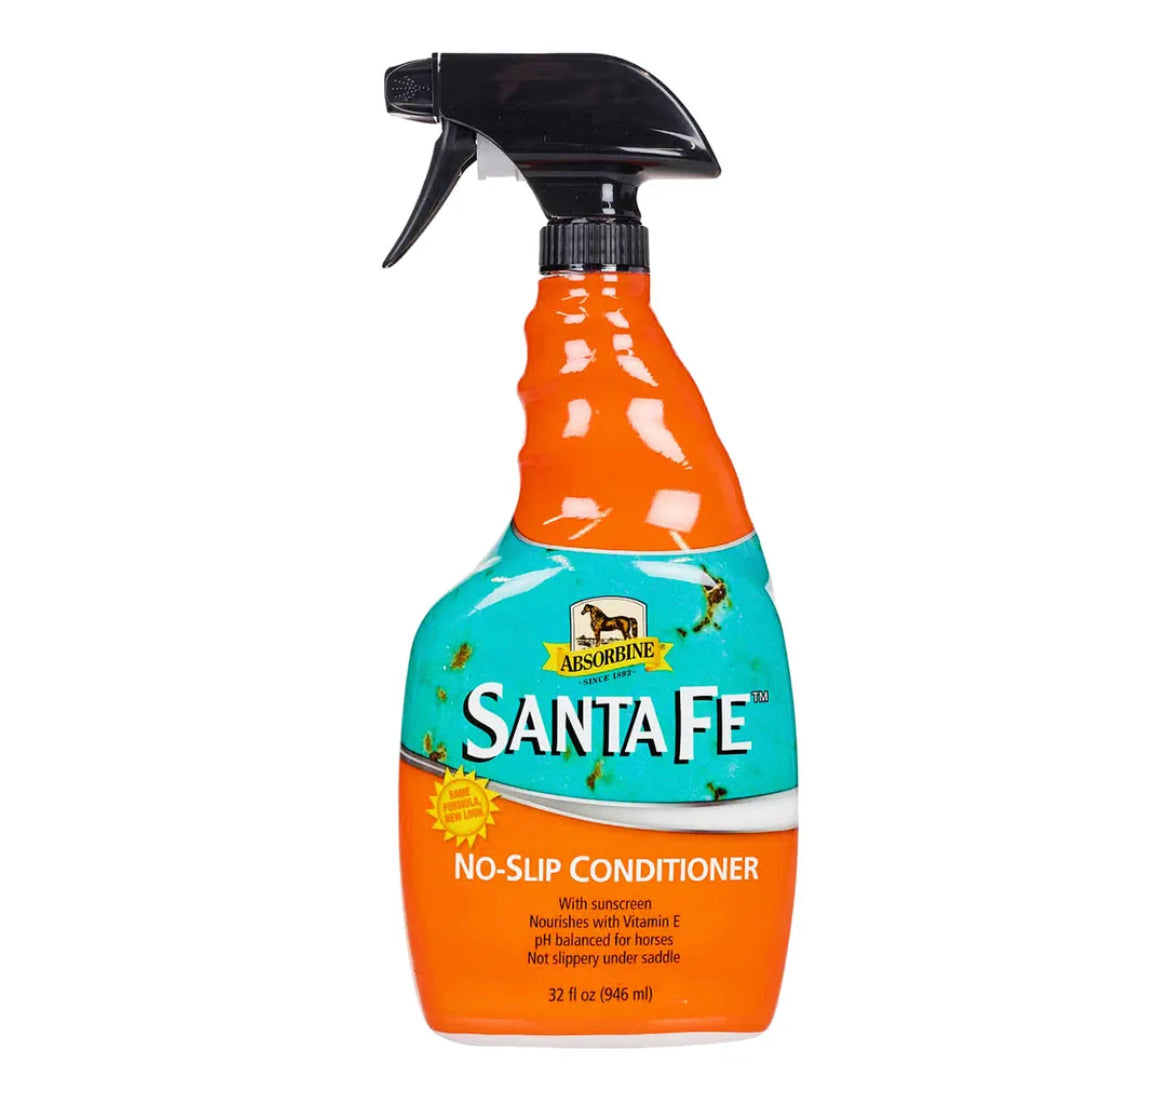 Santa Fe non slip conditioner